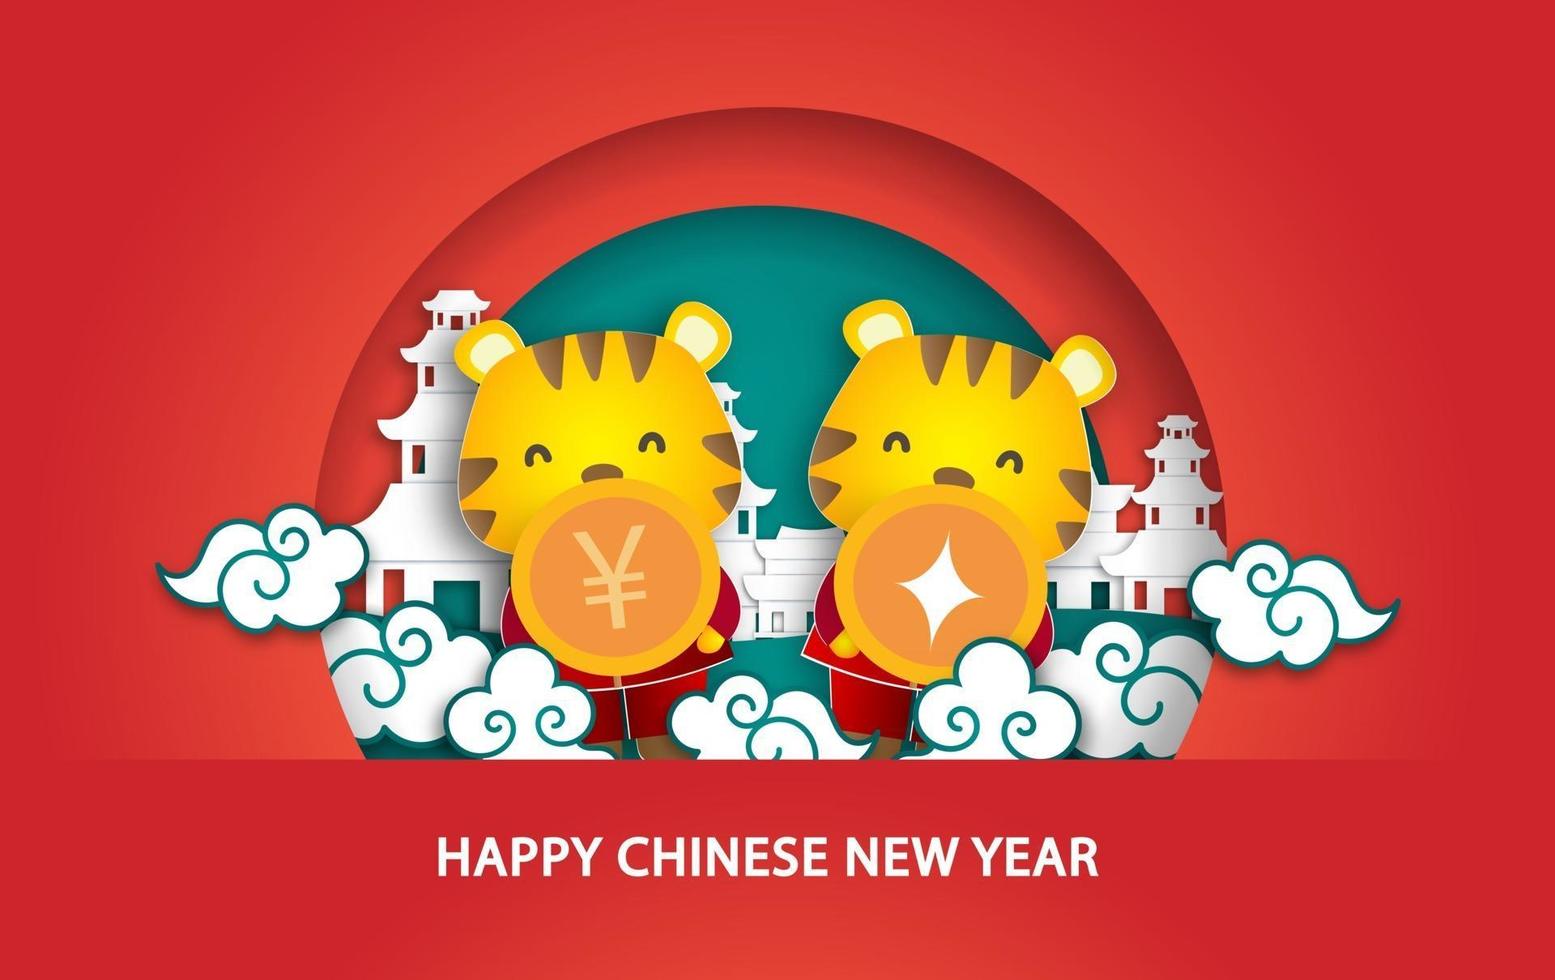 ano novo chinês 2022 ano do cartão do tigre em estilo de corte de papel vetor